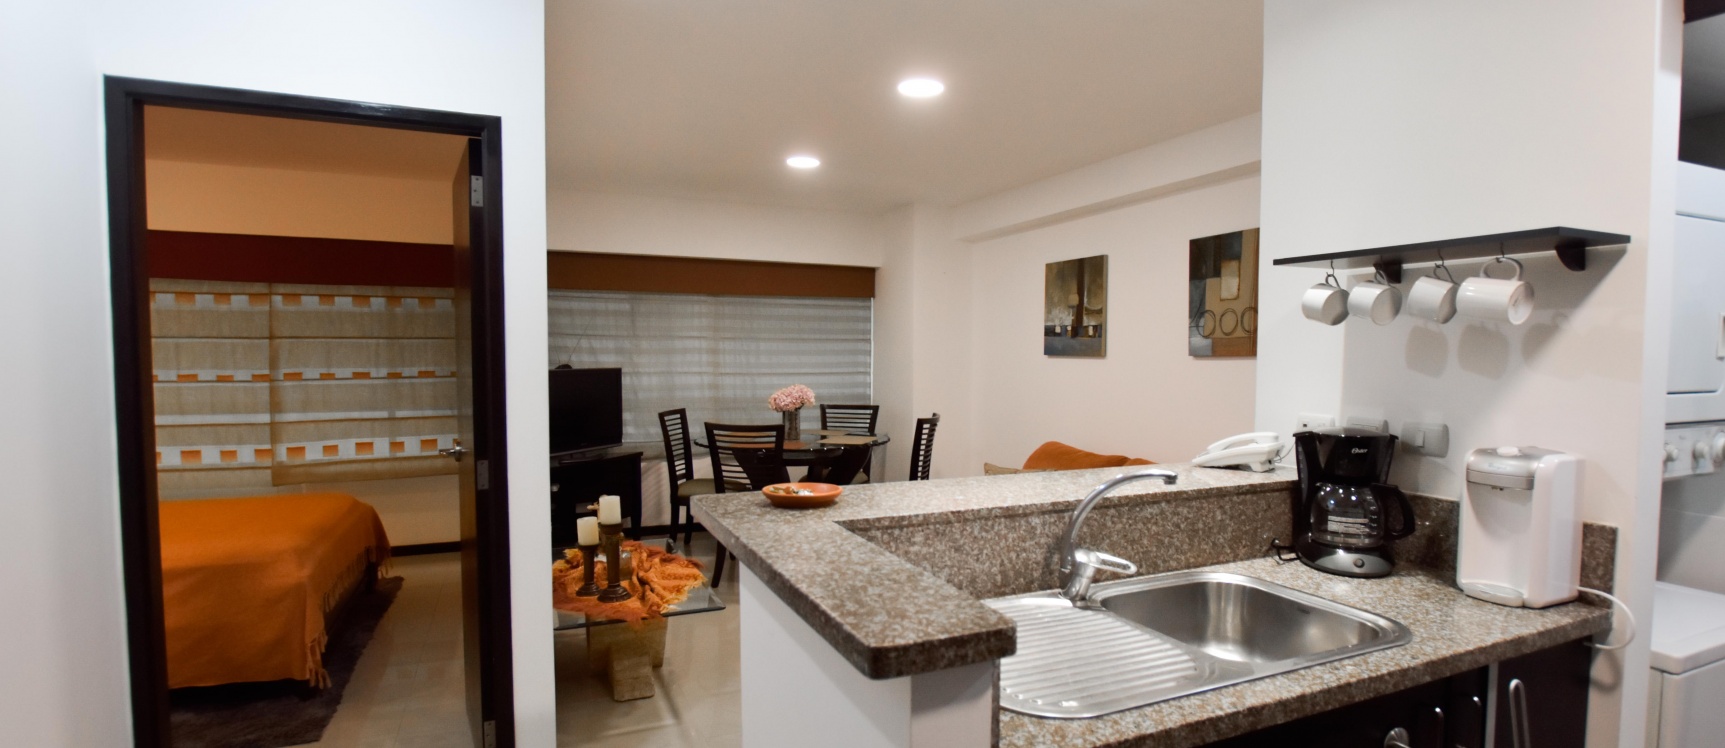 GeoBienes - Suite amoblada en alquiler ubicada en Torre Sol 2 - Plusvalia Guayaquil Casas de venta y alquiler Inmobiliaria Ecuador